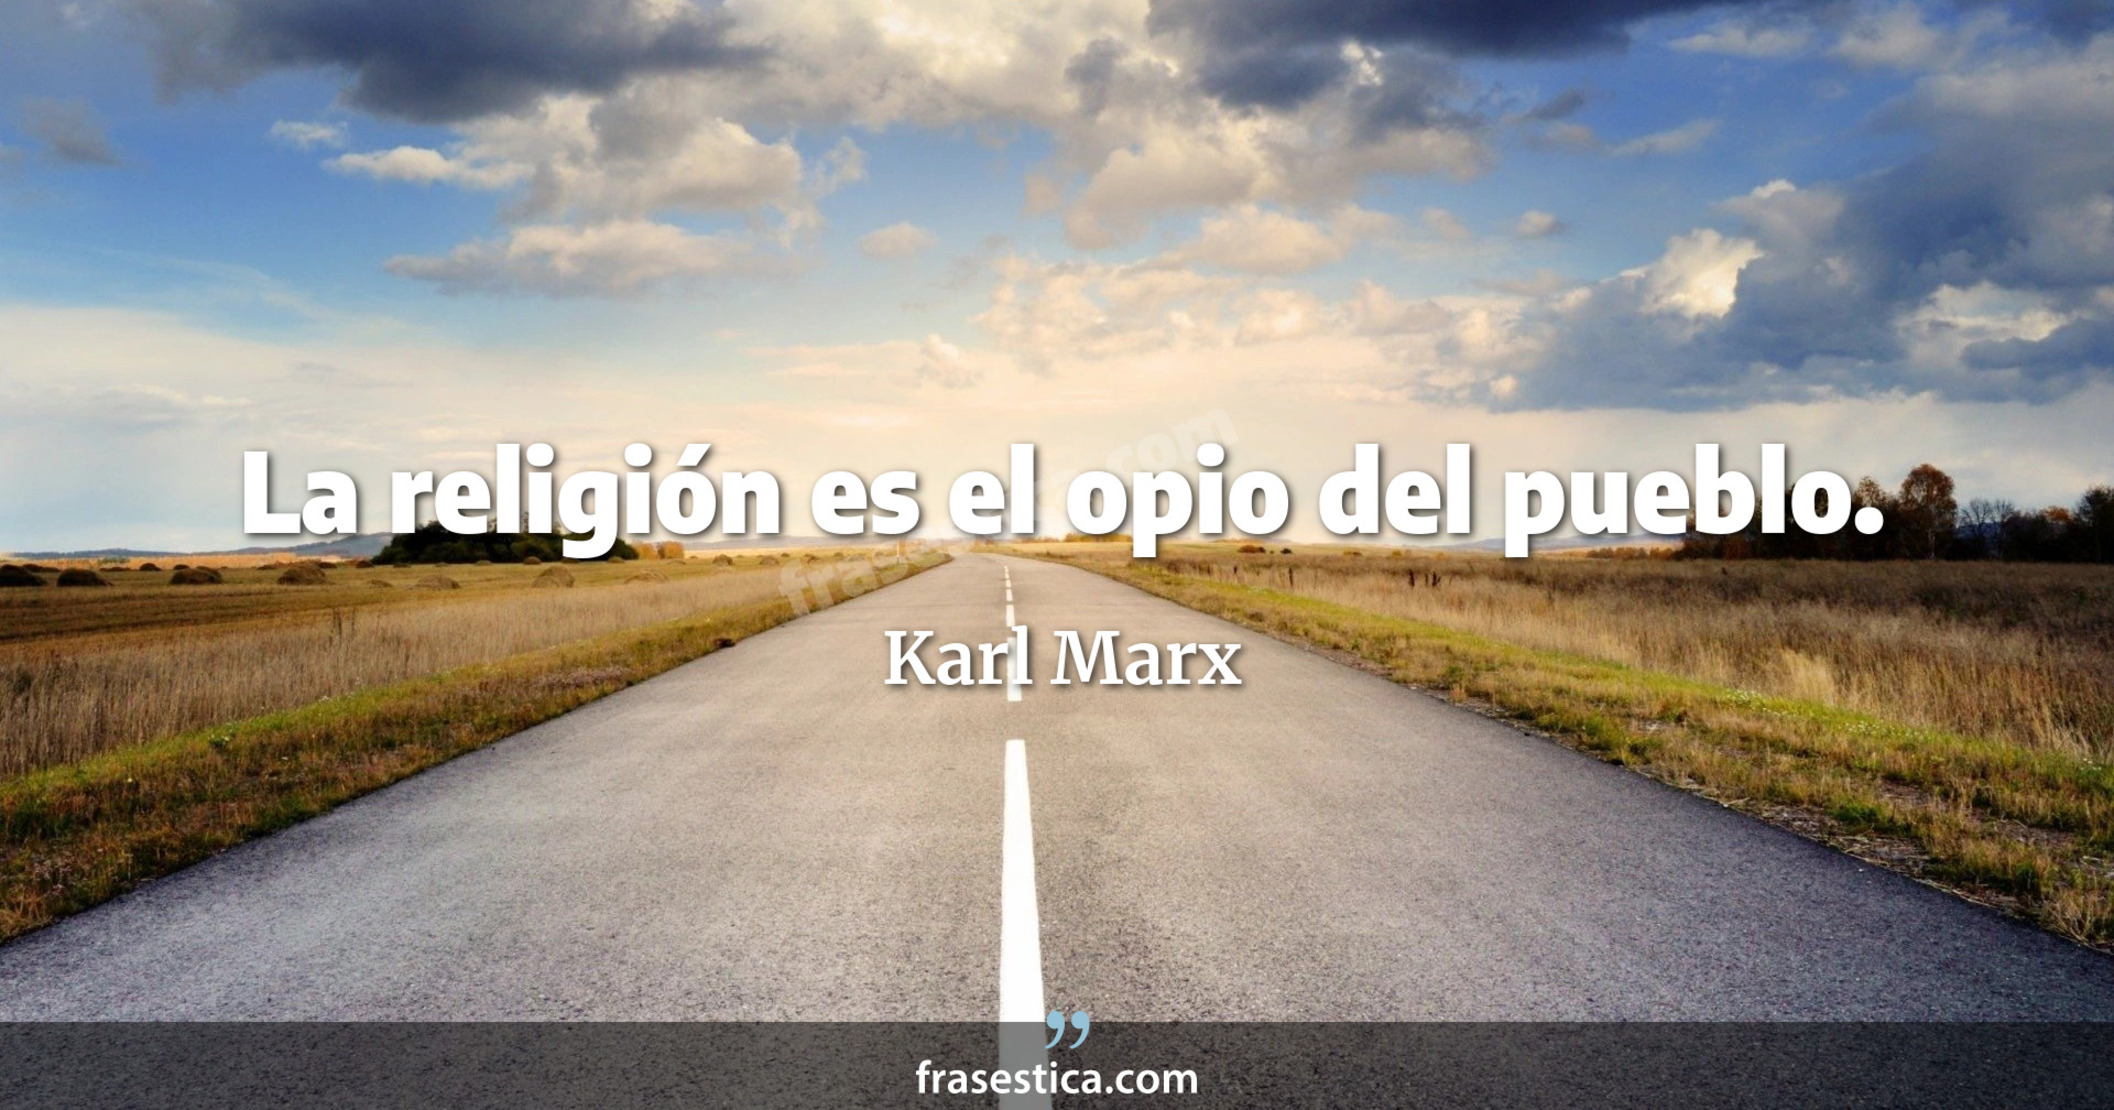 La religión es el opio del pueblo. - Karl Marx